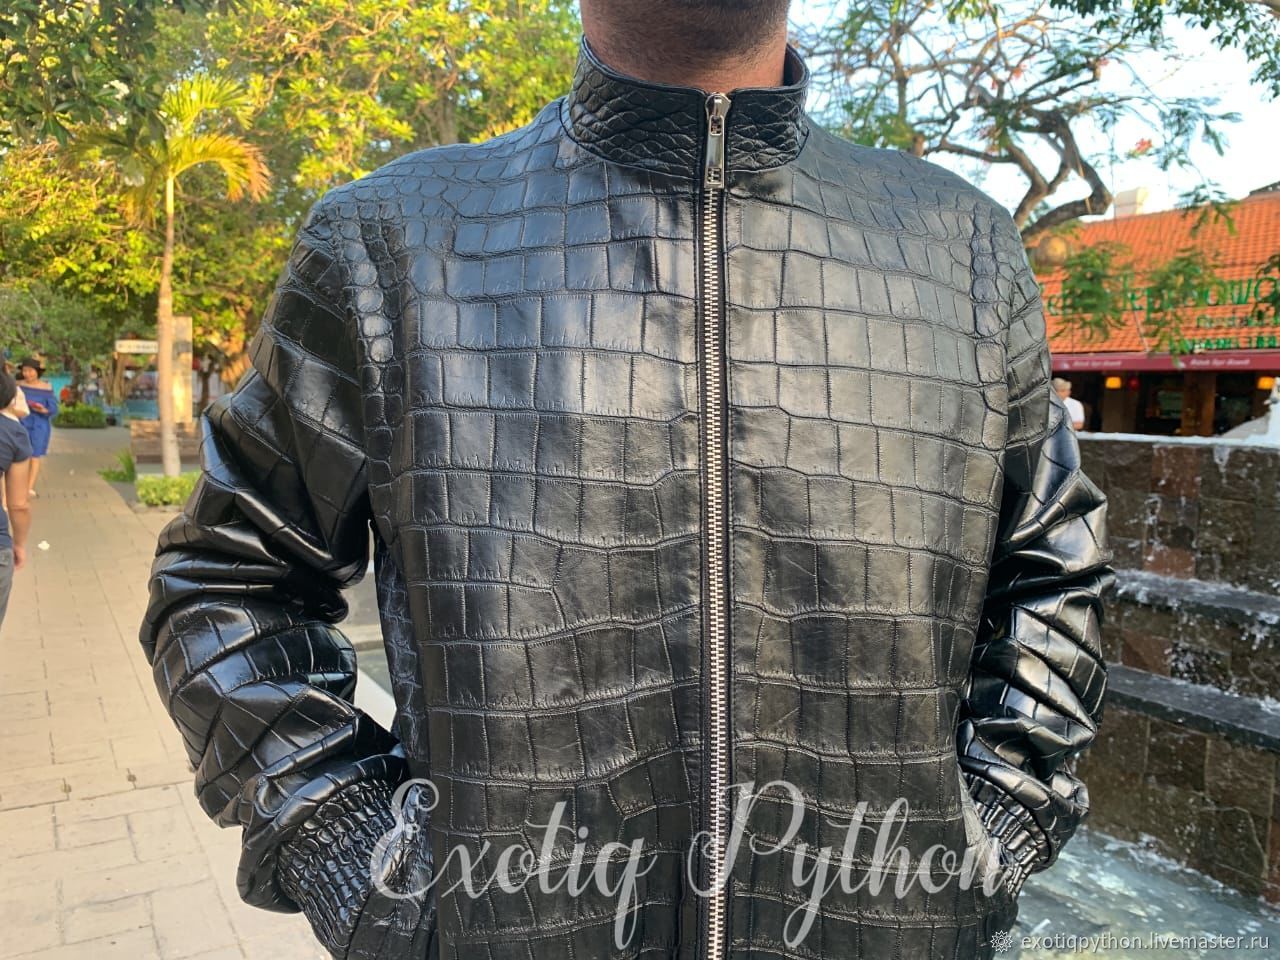 Crocodile leather jackets - Crocodile skin jackets